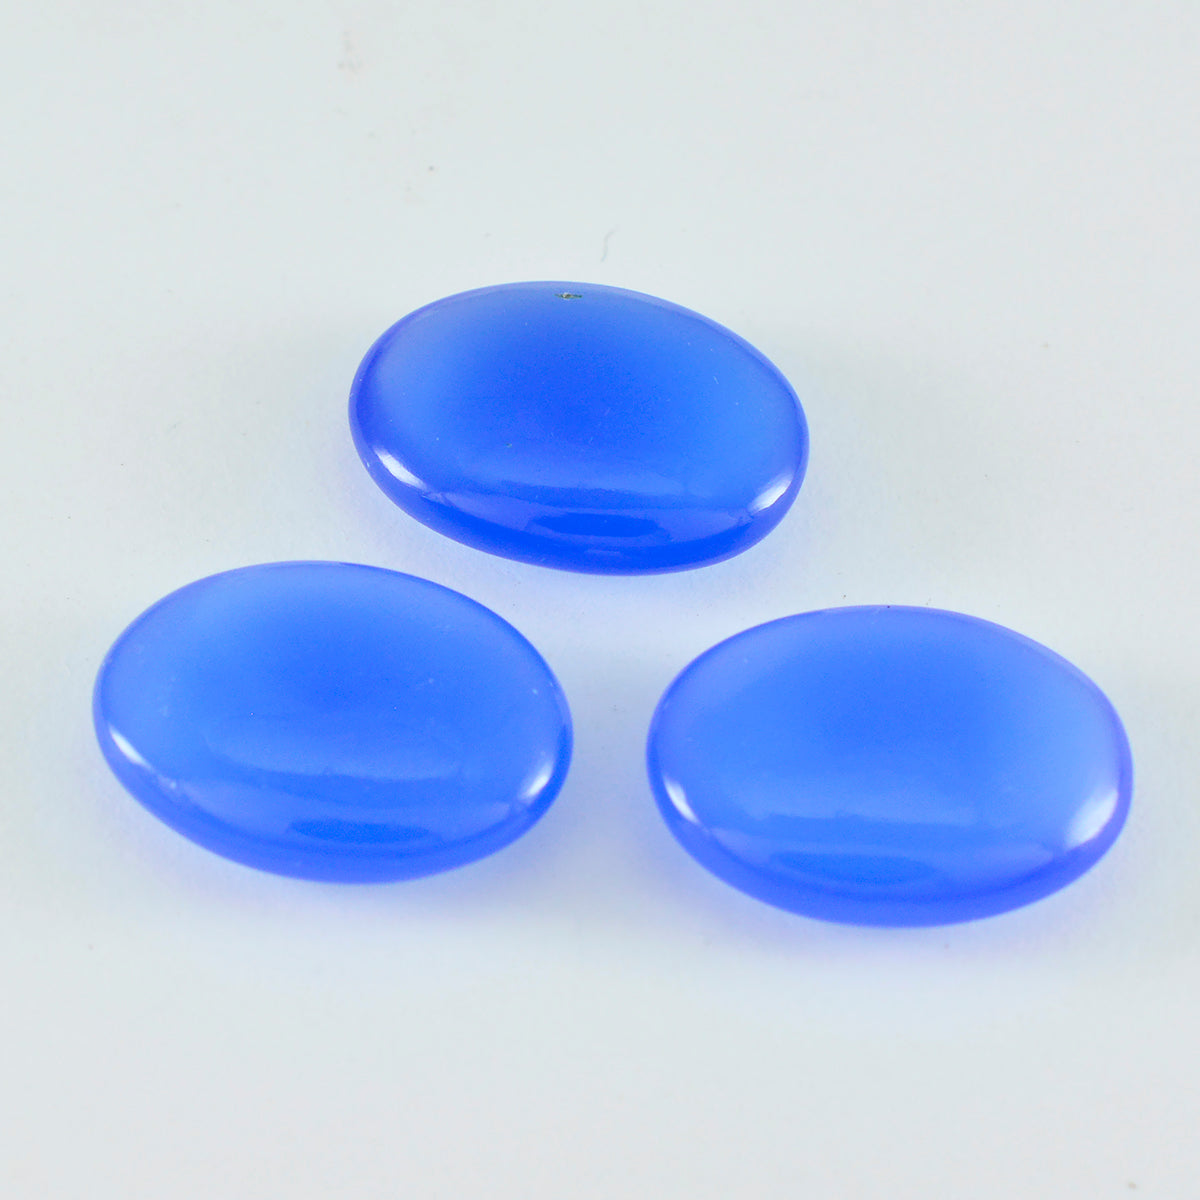 riyogems 1pc cabochon di calcedonio blu 10x14 mm forma ovale gemme di straordinaria qualità